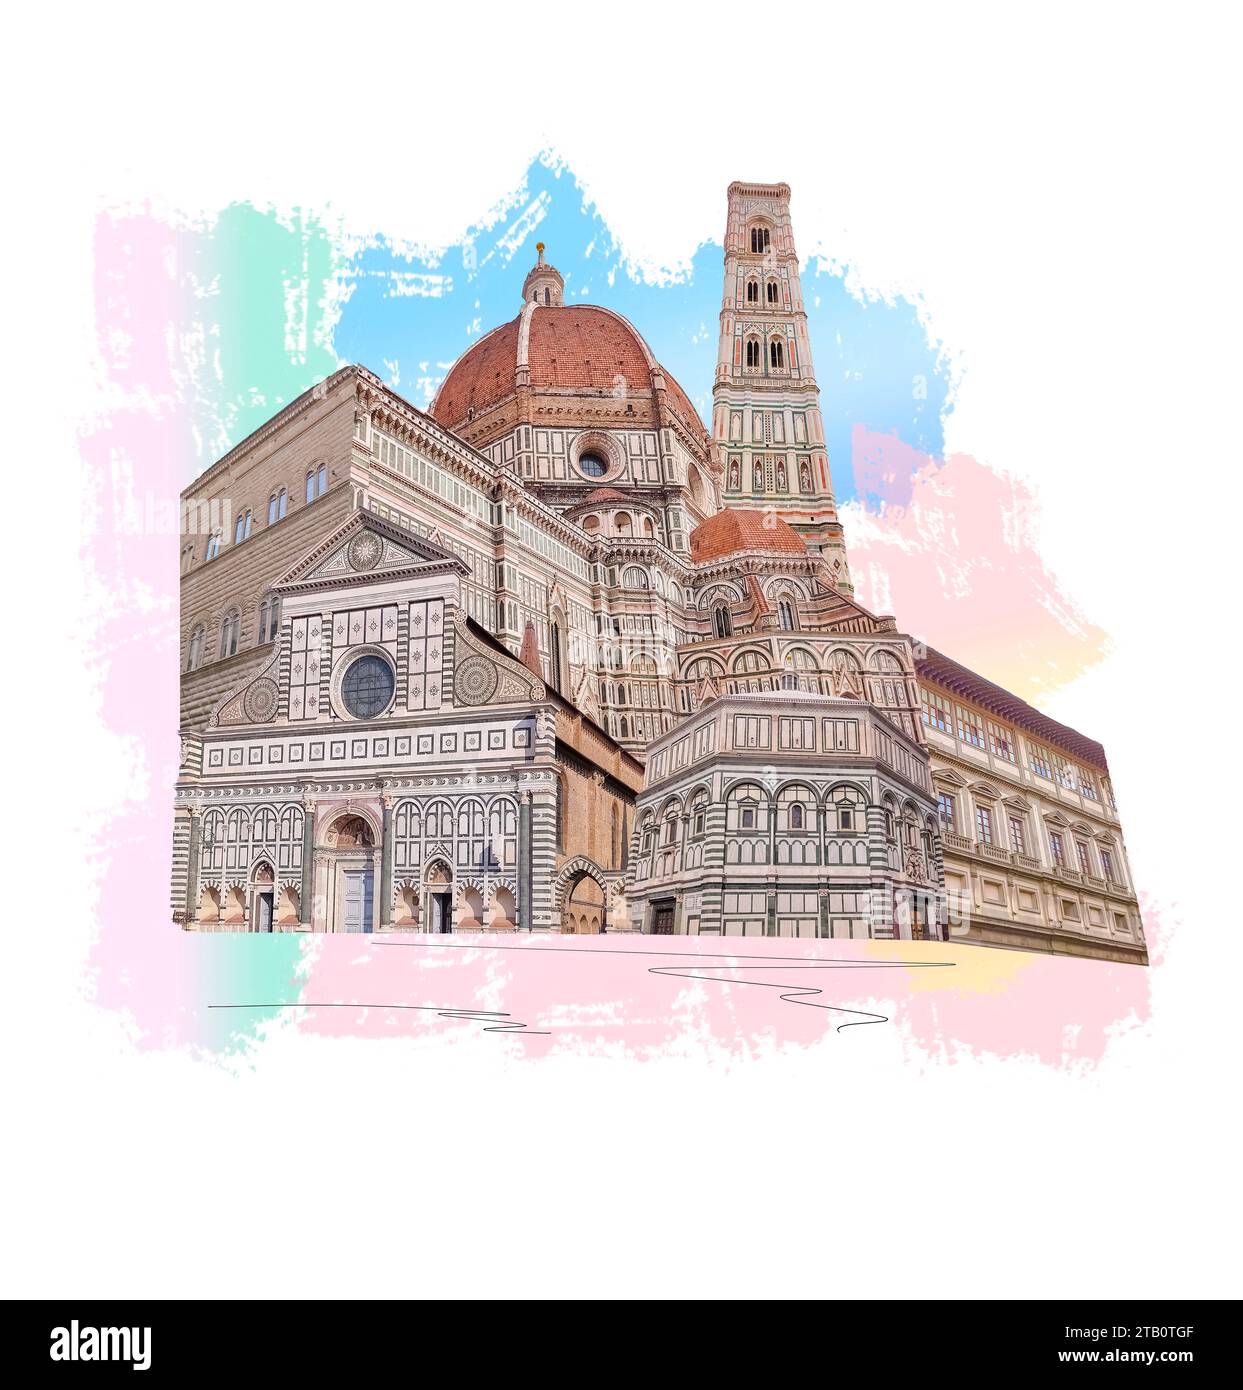 Collage der Wahrzeichen von Florenz, Italien. Basilika Santa Maria del Fiore oder Basilika der Heiligen Maria der Blume in Florenz, Italien. Kunstdesign Stockfoto